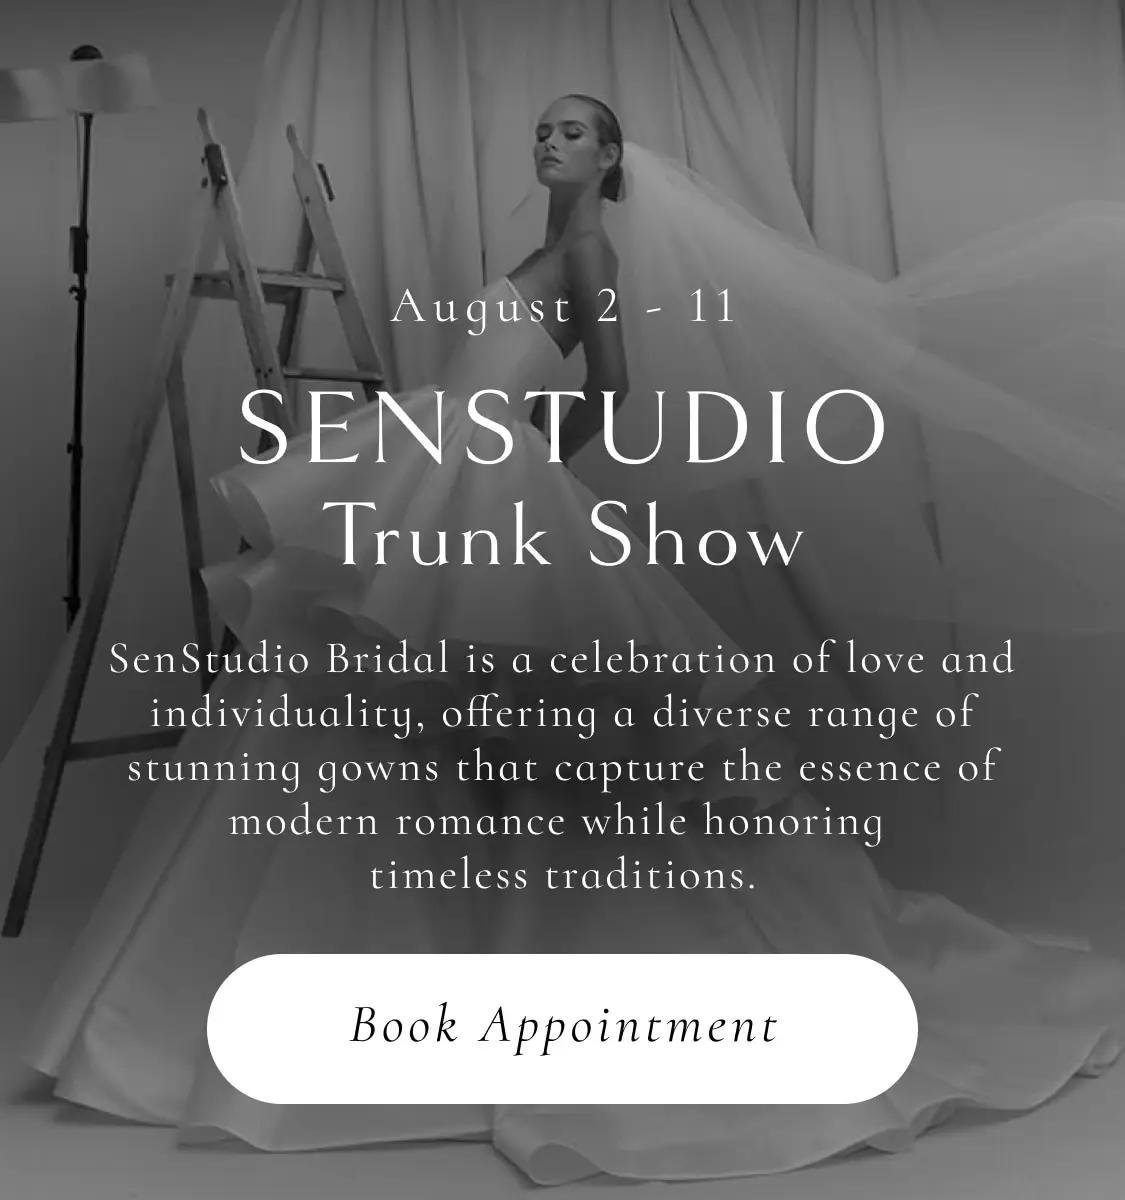 Senstudio Trunk Show at Solutions Bridal